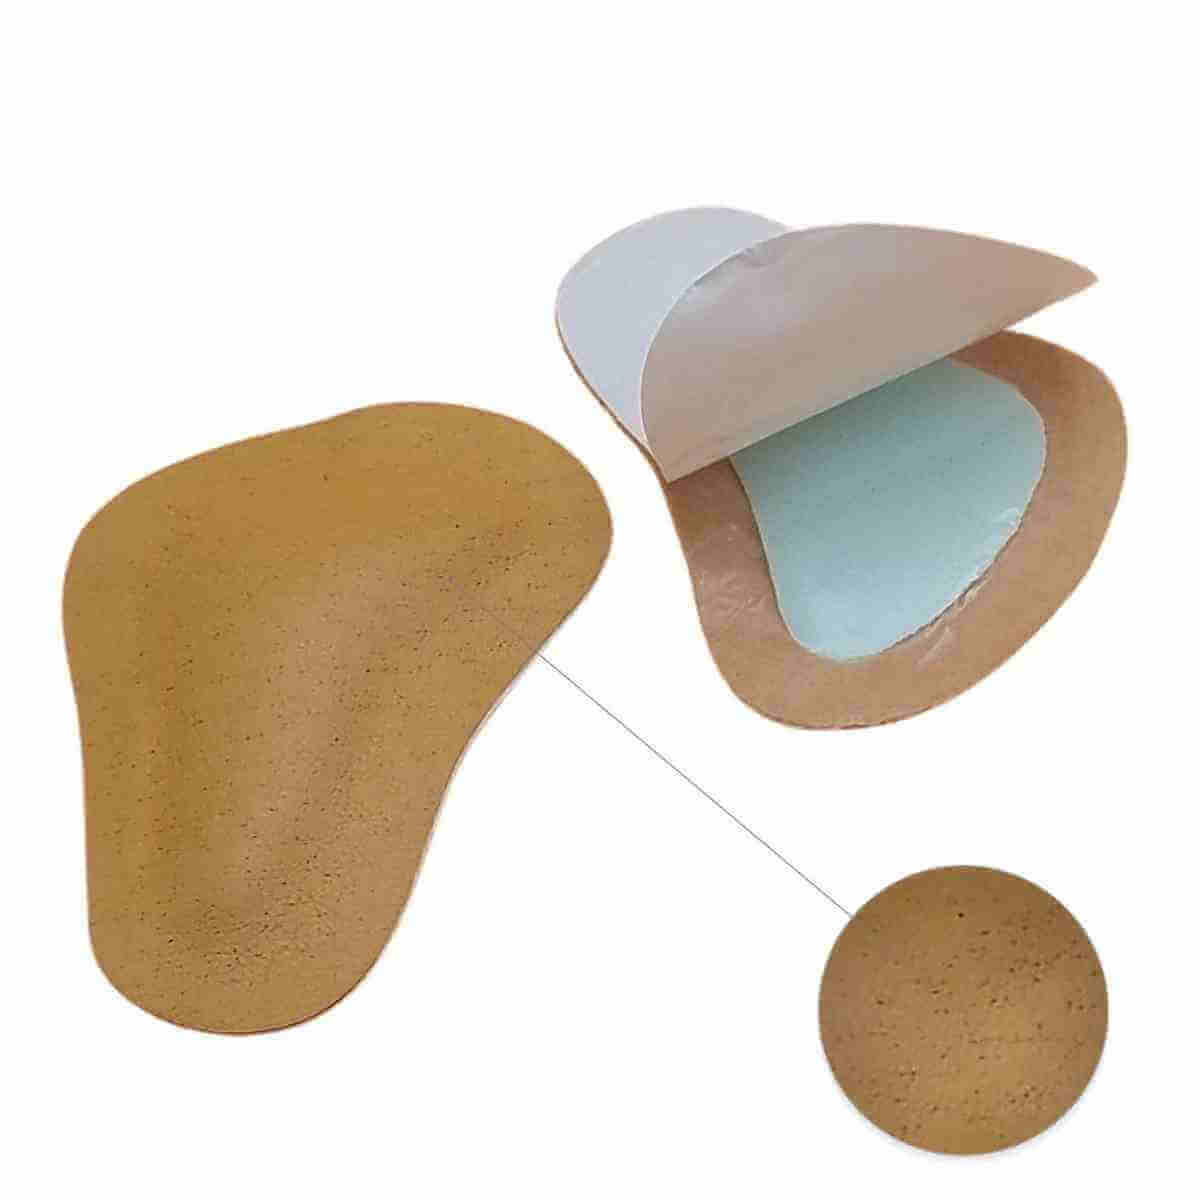 Forfodsindlæg - Pelotte til støtte og lindring af nedsunken forfod. Forfodspelotte er et lille skoindlæg, der løfter forfoden op og reducerer smerter ved forfodsfald. 1 Par - Bedste pris.